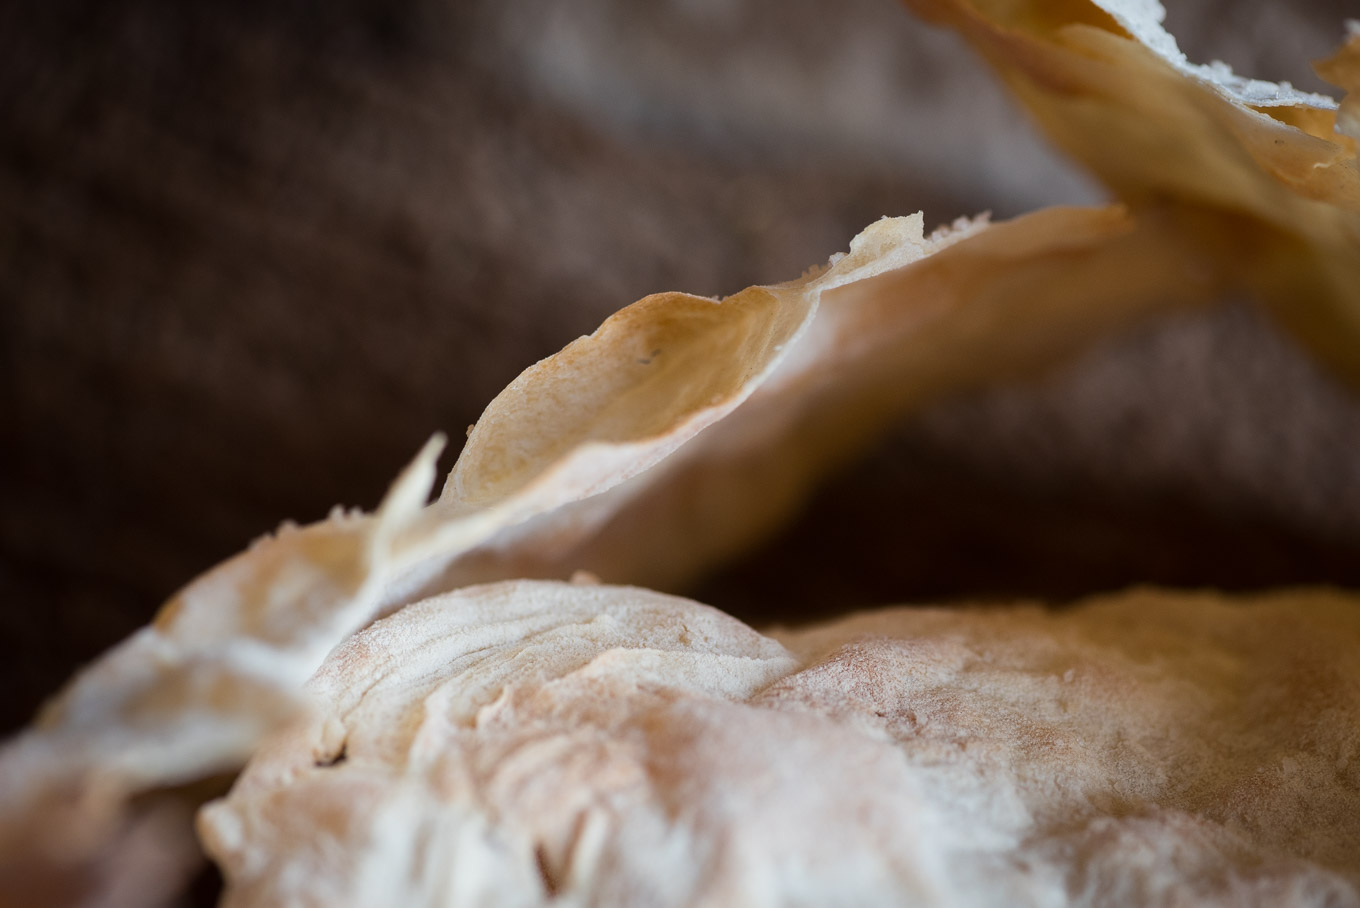 Rezept für Knackige Brotfladen hauchdünn selbst gebacken Langzeitgeführung Hefeteig Weißbrot Marian Moschen Food Fotografie